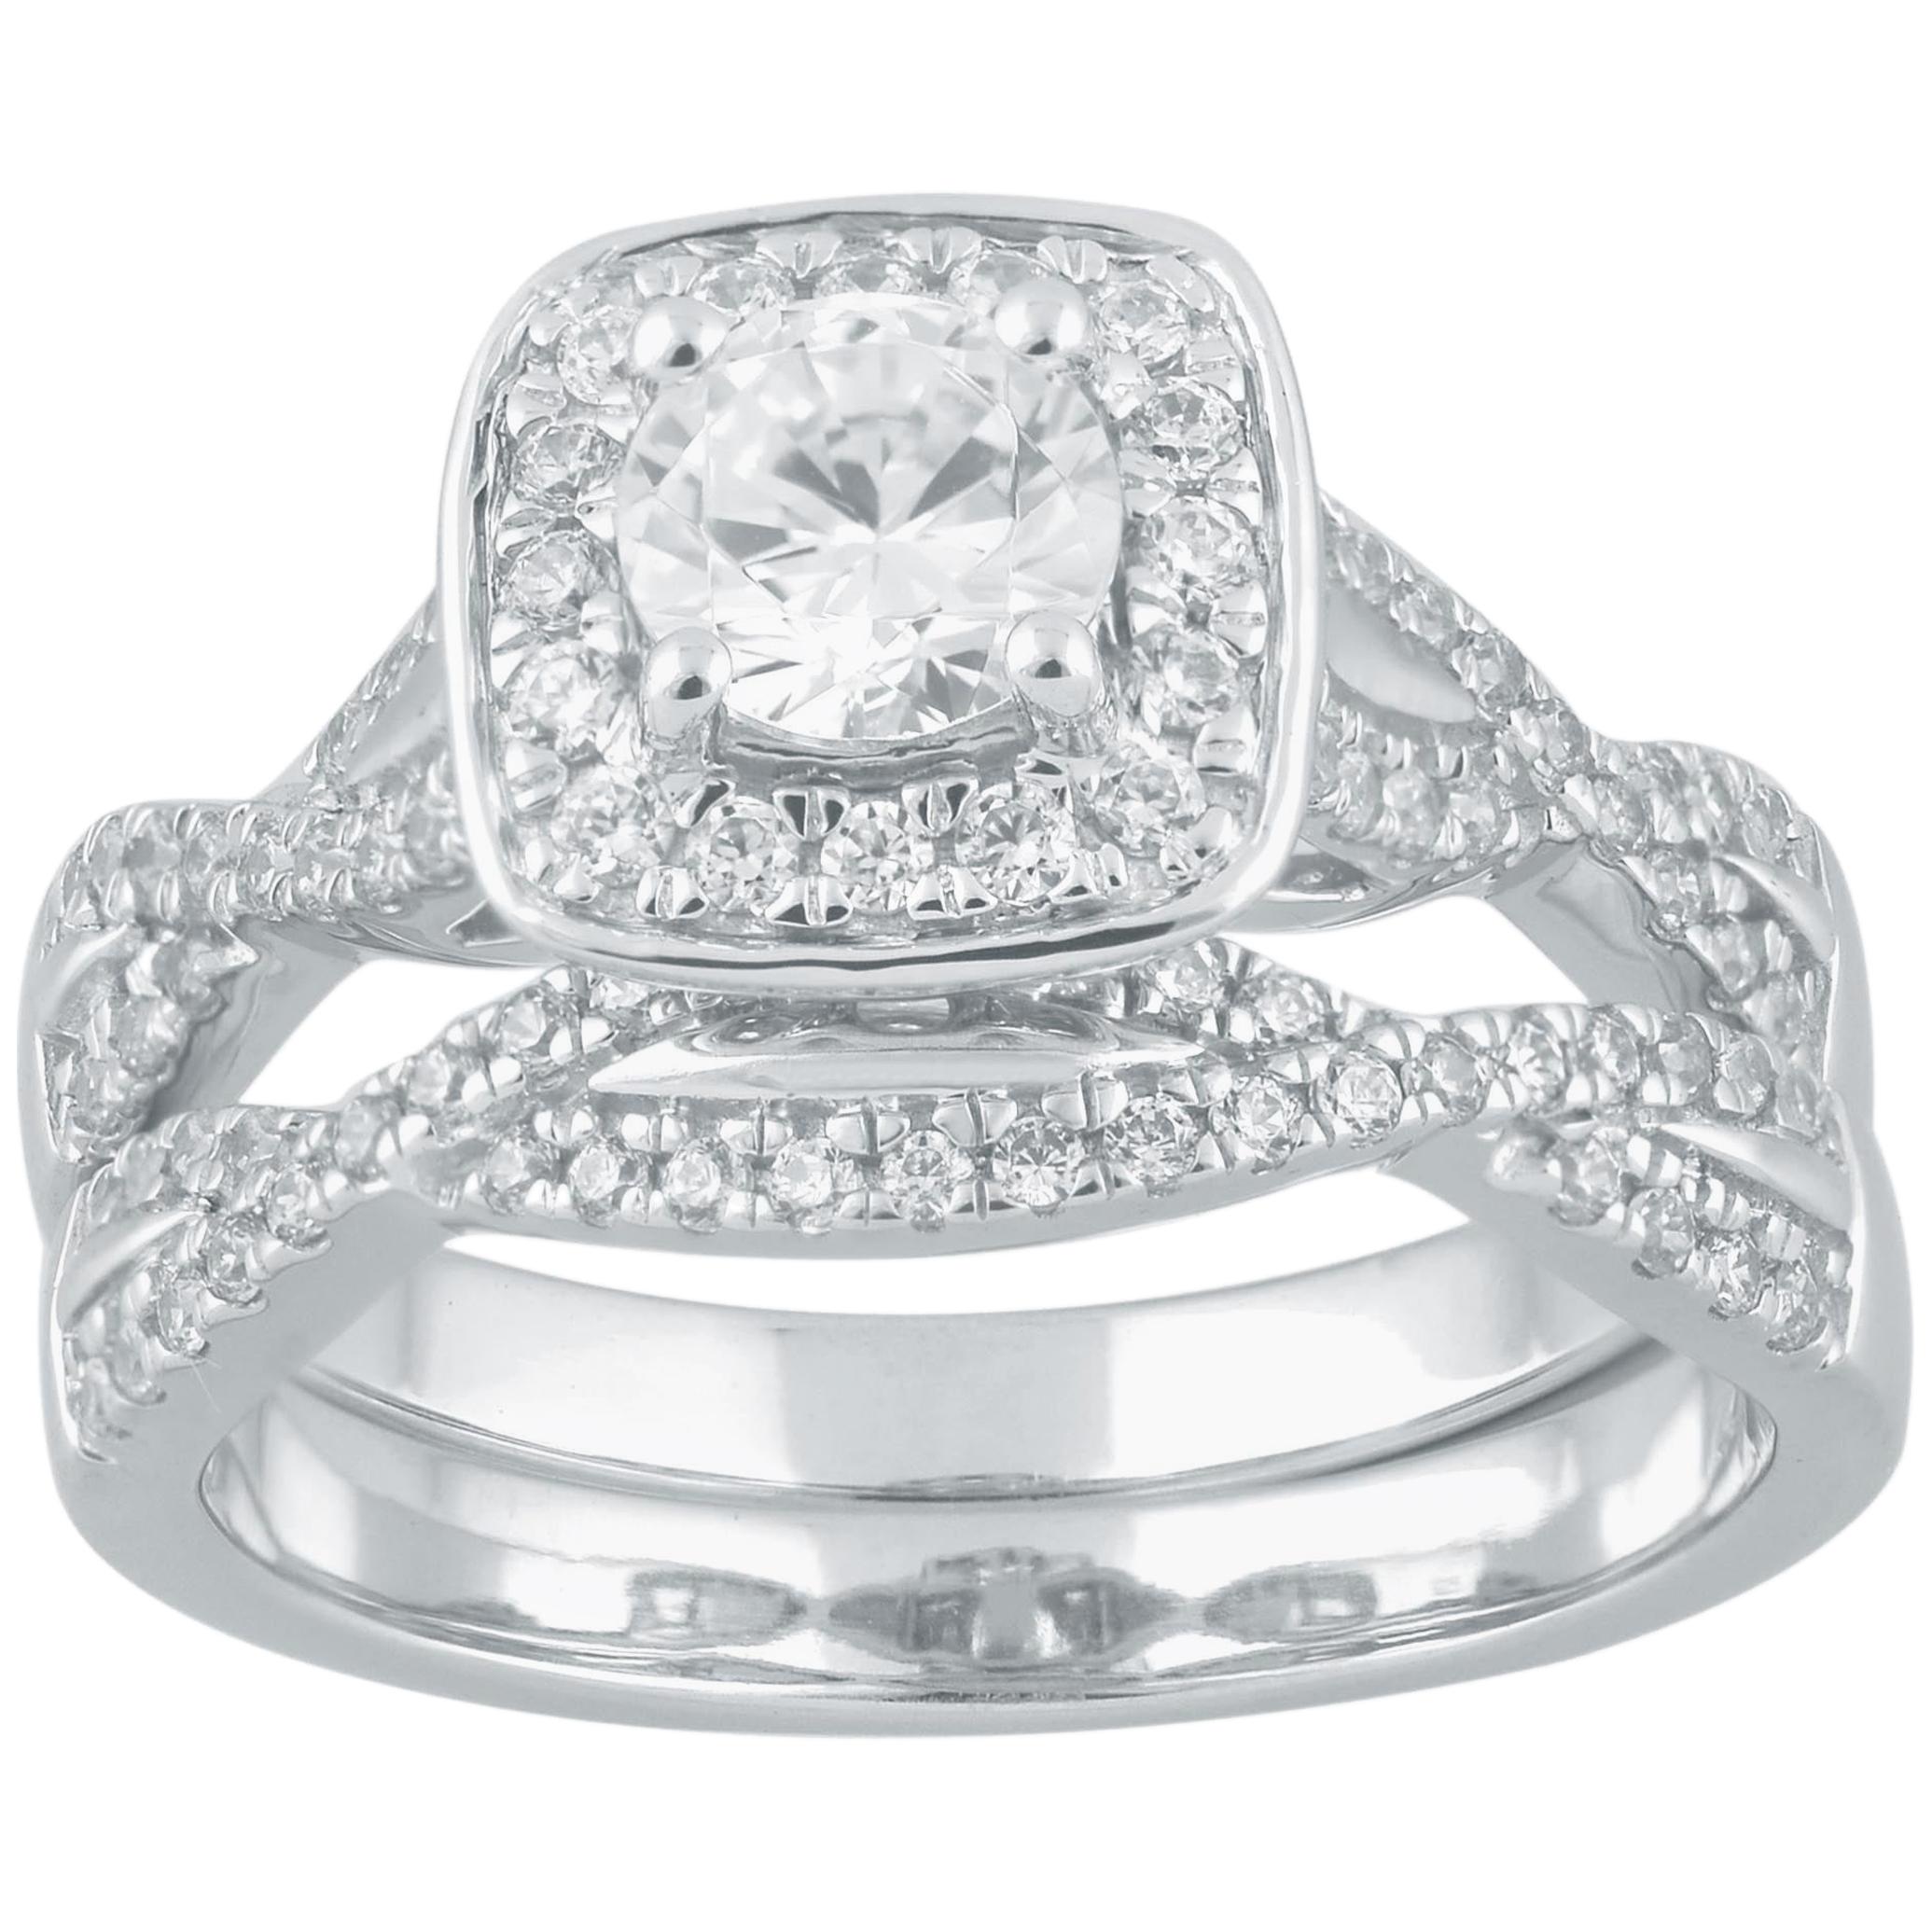 TJD 1.0 Carat Round Diamond 18 Karat White Gold Twisted Shank Bridal Ring Set